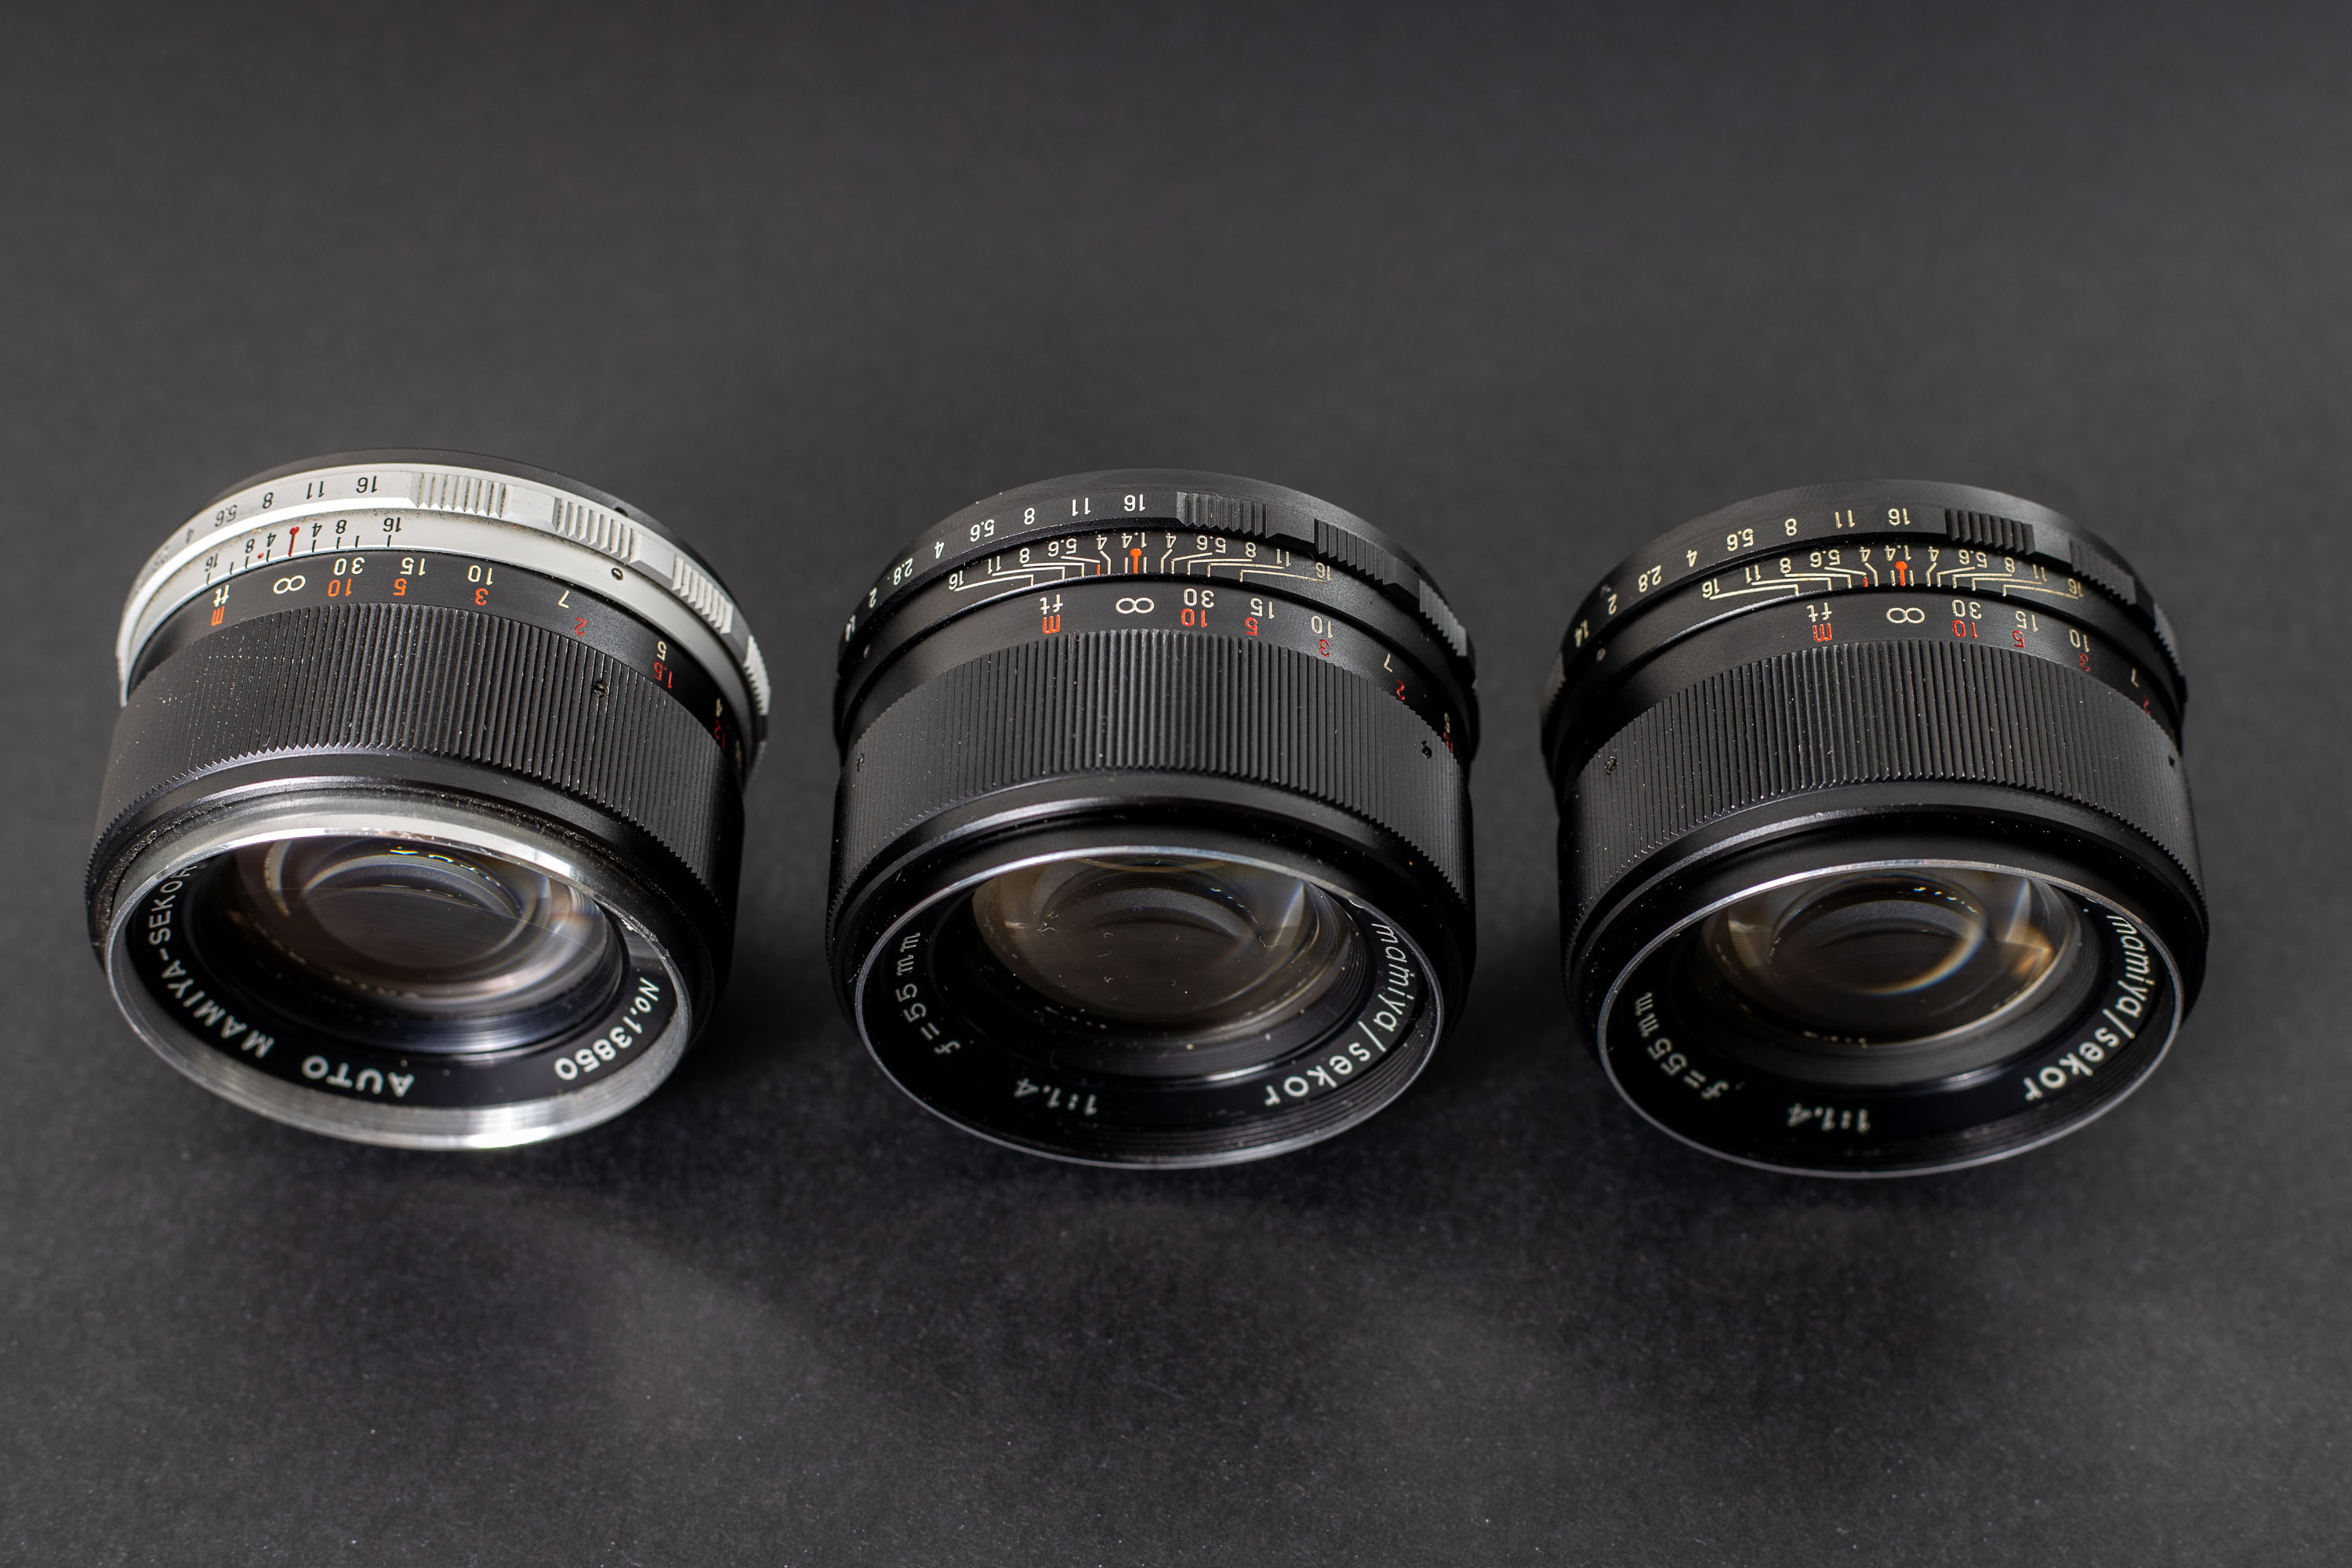 Three Mamiya Sekor 55mm f1.4 lenses - Angle view